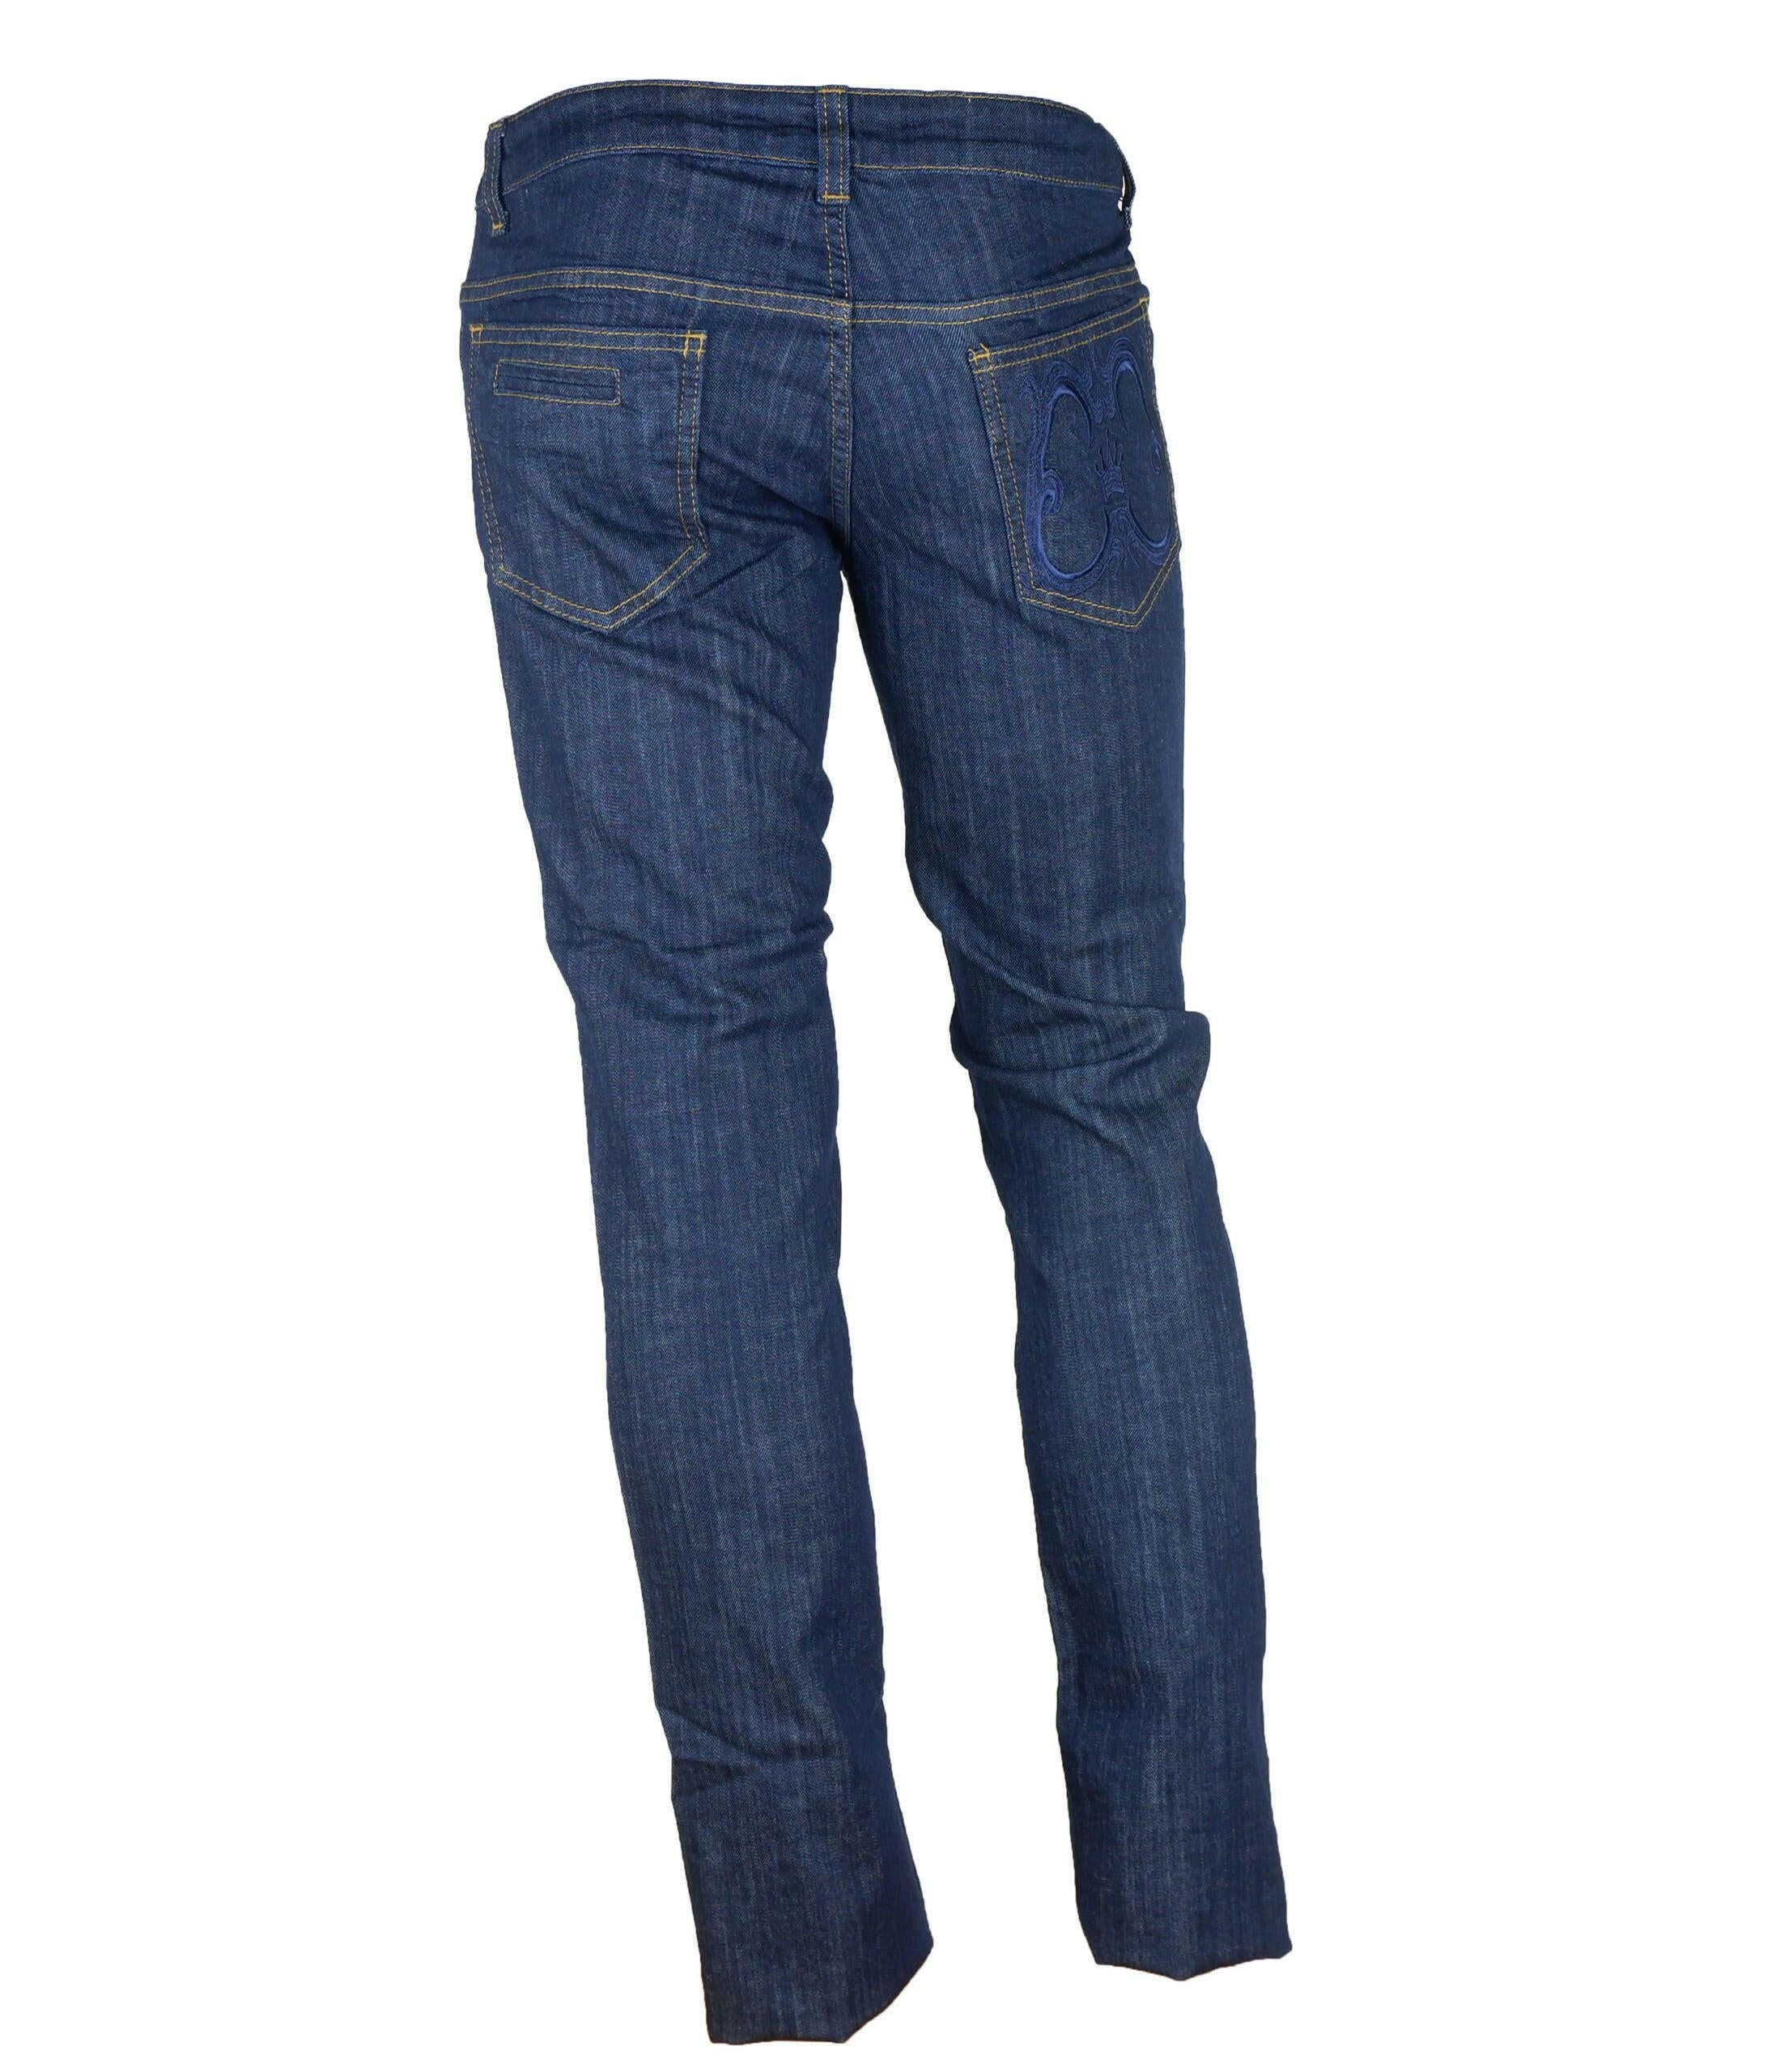 Cavalli Class Blue Cotton Jeans & Pant - GENUINE AUTHENTIC BRAND LLC  